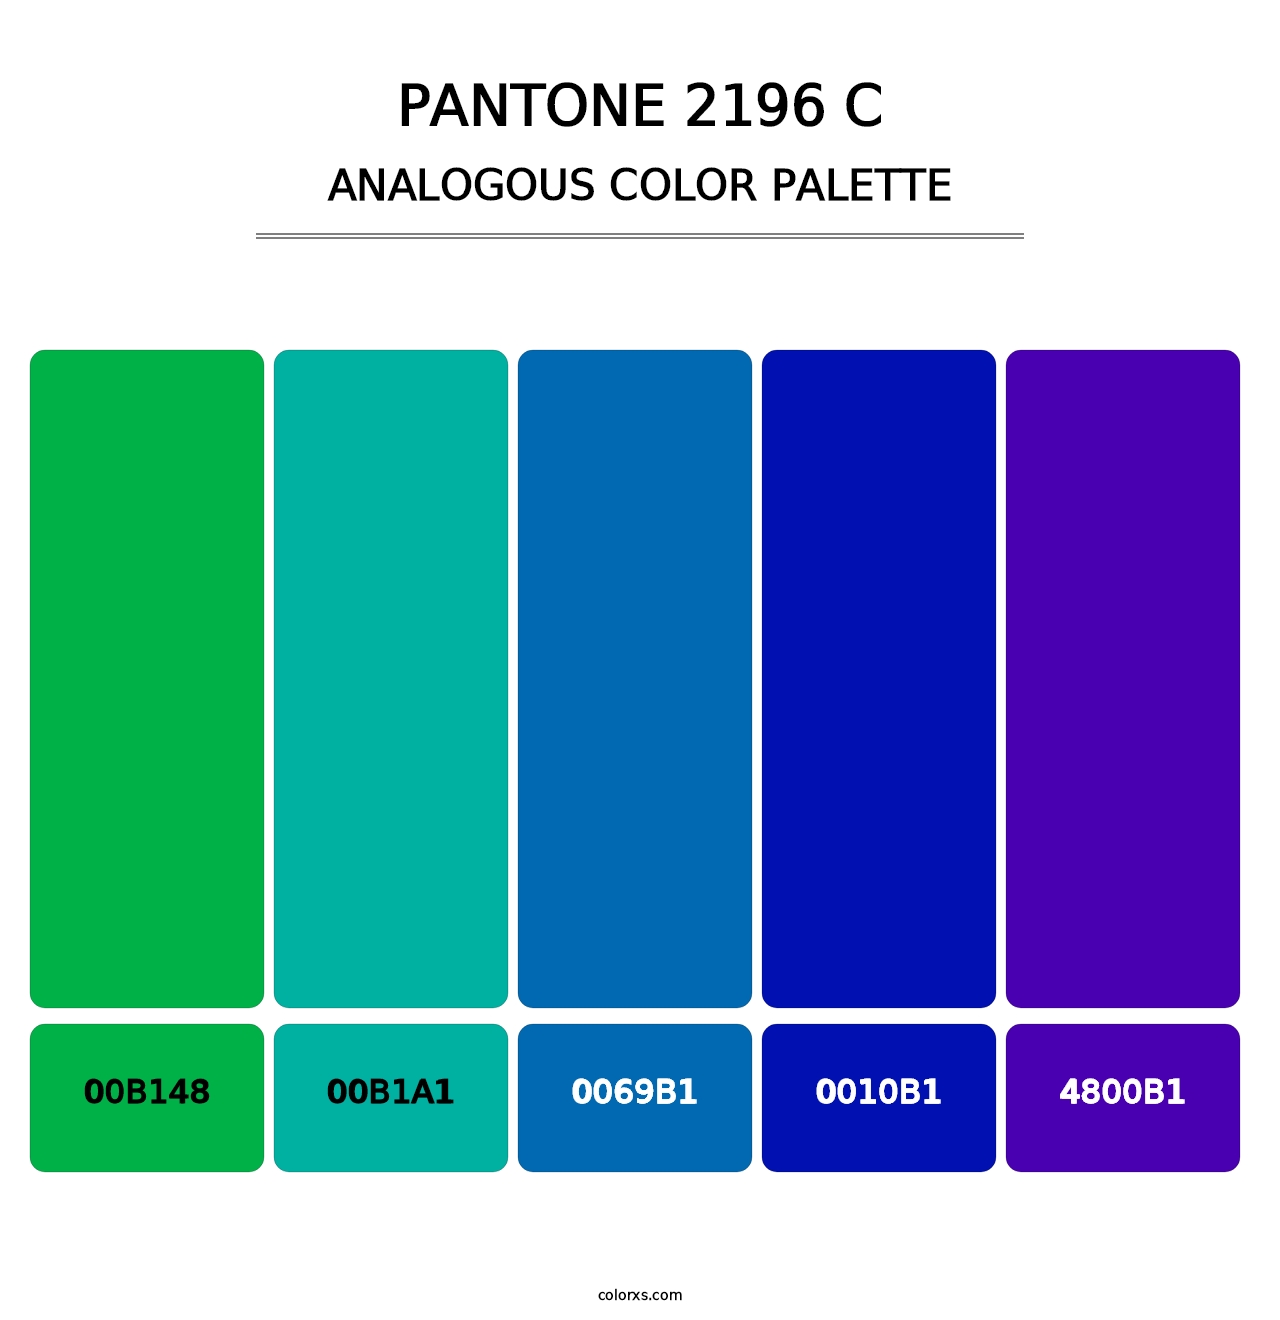 PANTONE 2196 C - Analogous Color Palette